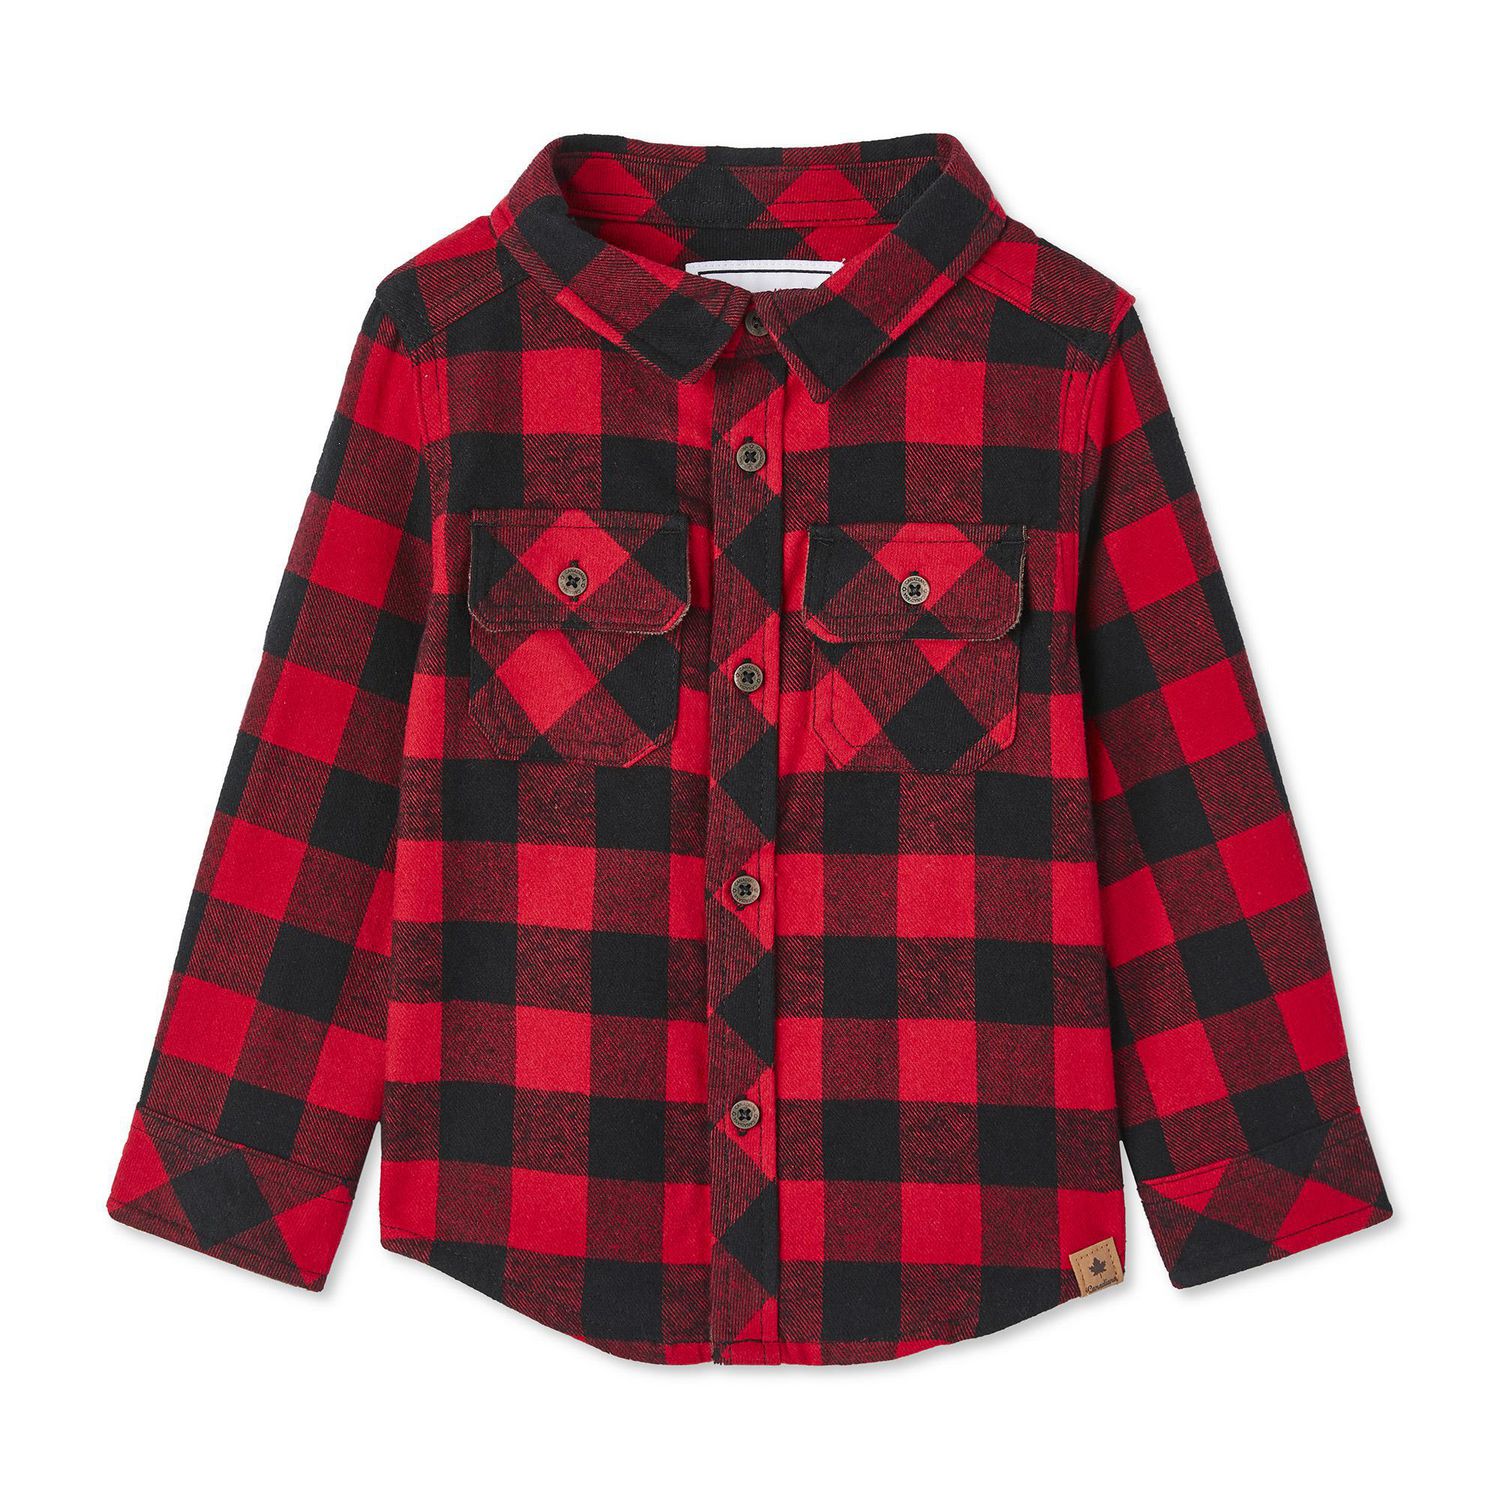 Canadiana Toddler Boys' Flannel Shirt | Walmart Canada